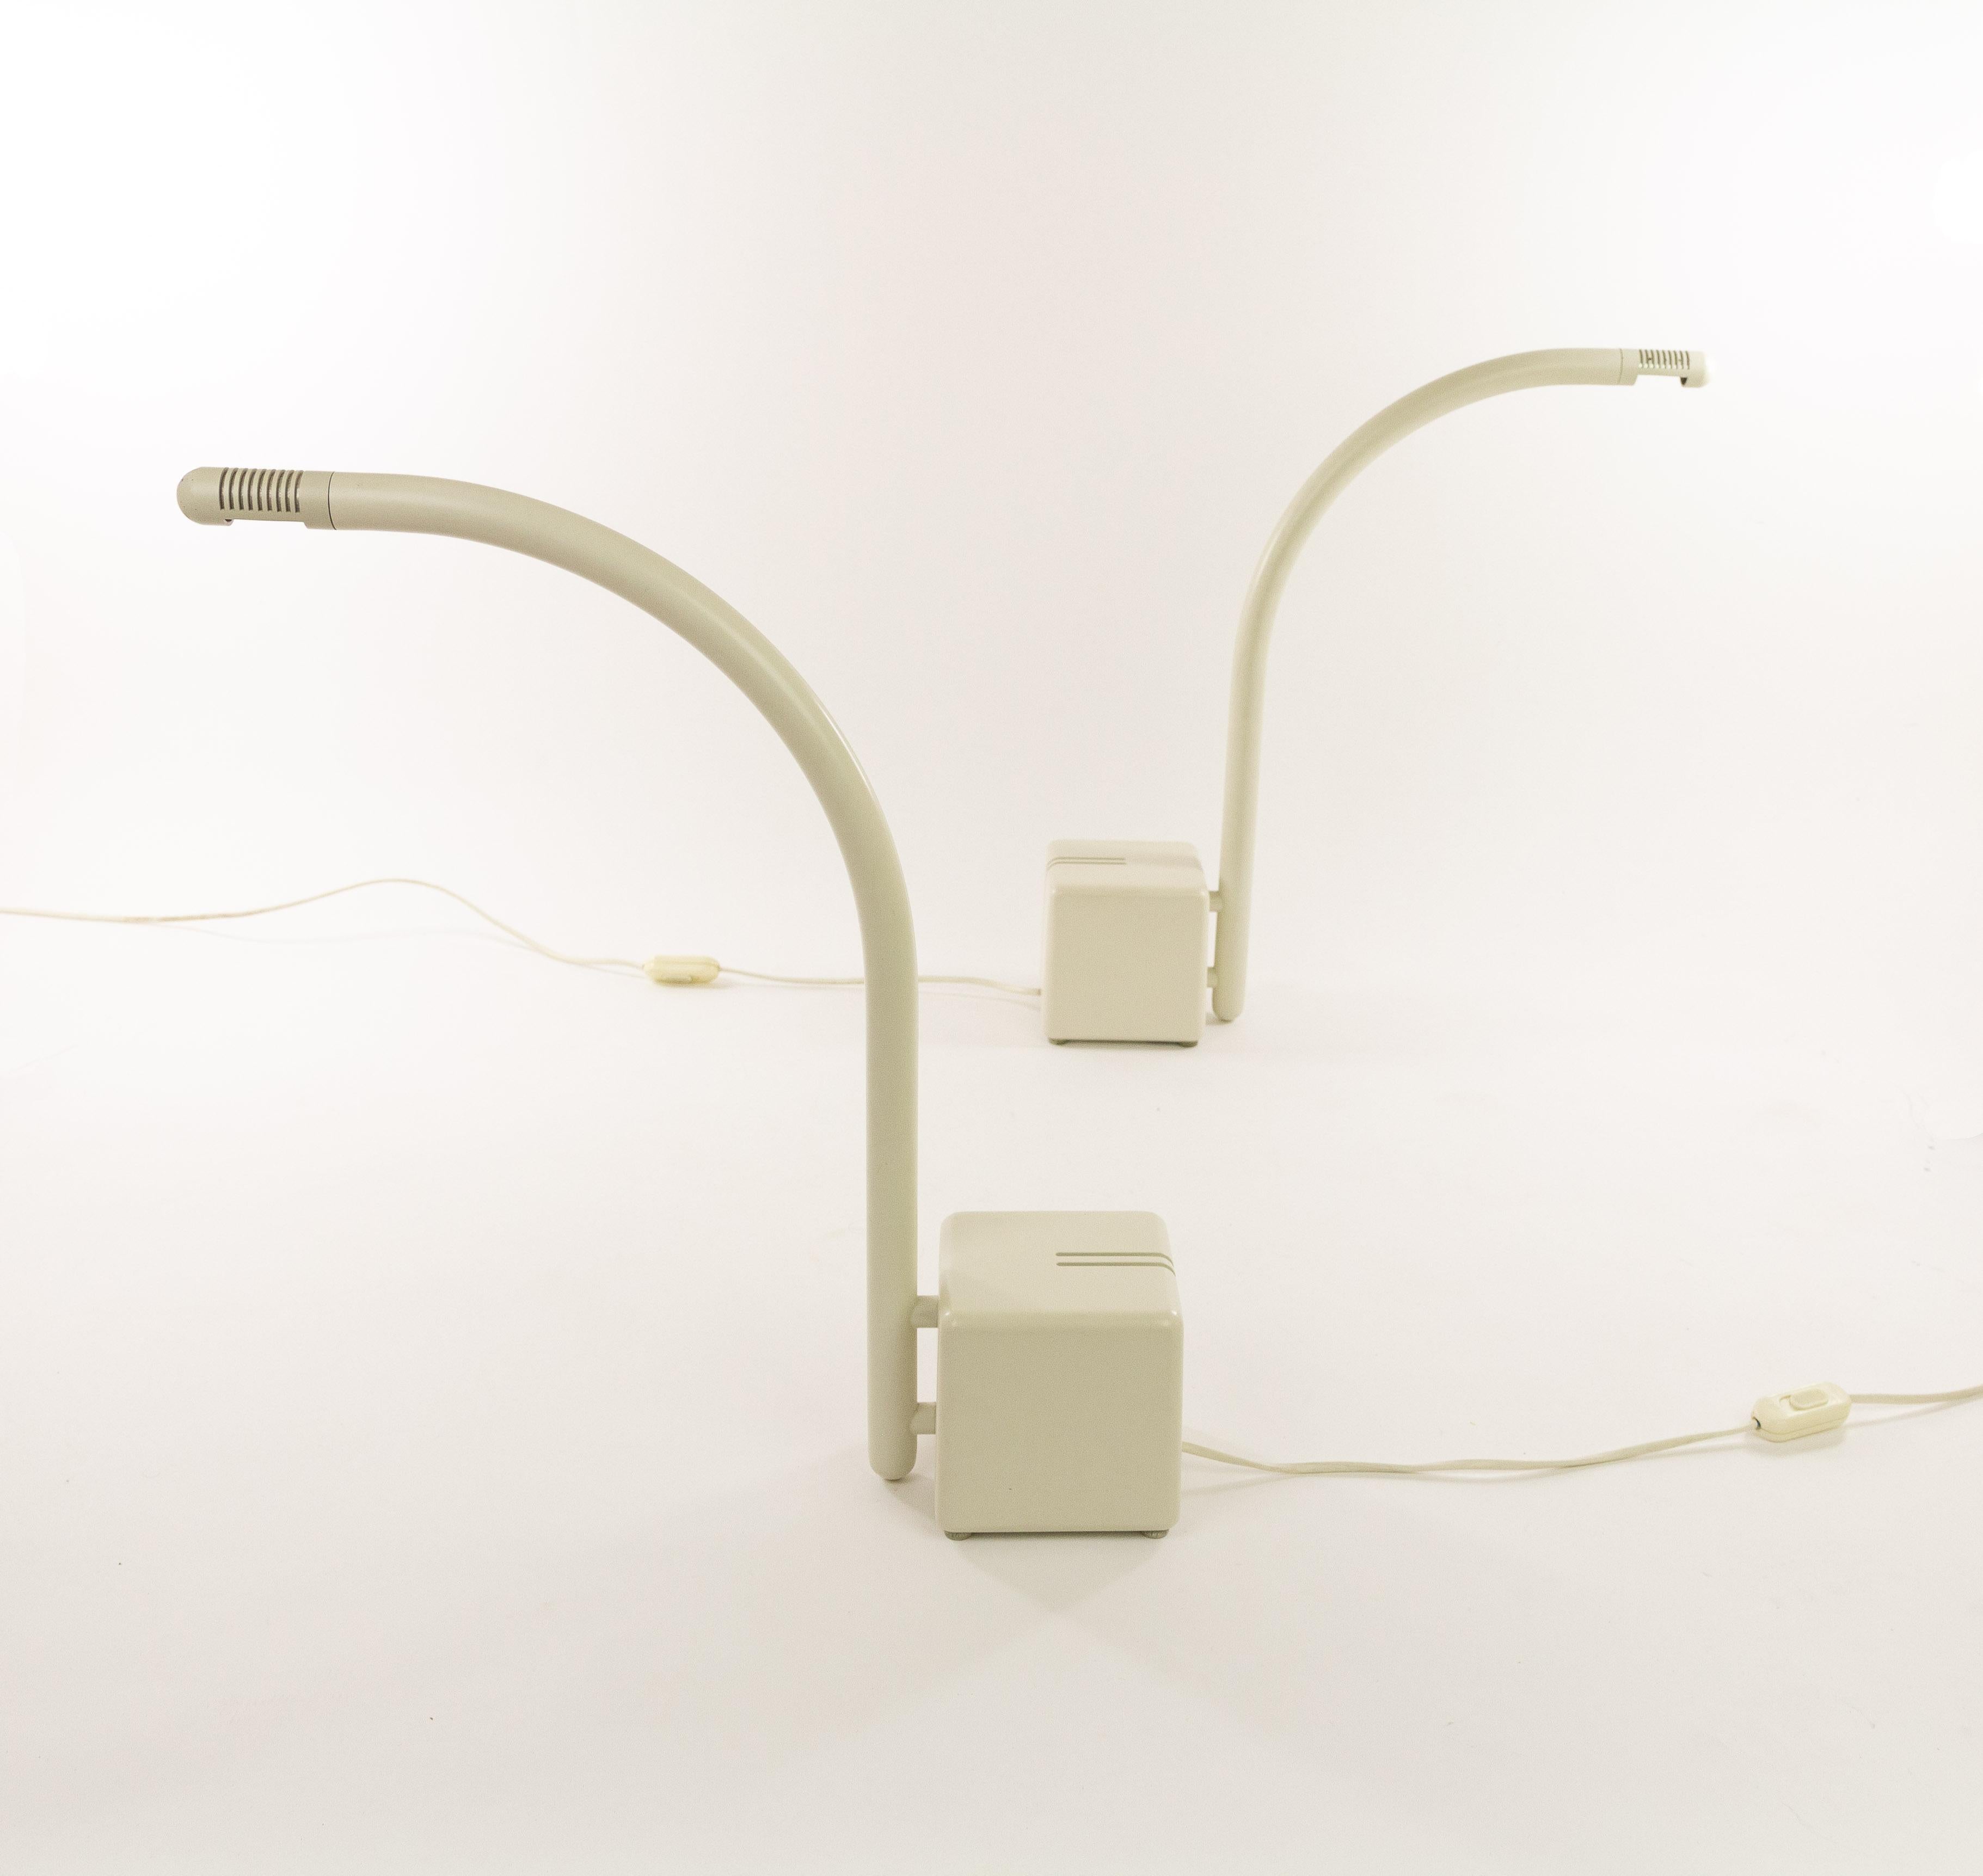 Ein Paar minimalistische Halogen-Tischlampen von Claus Bonderup & Torsten Thorup für Focus Denmark, entworfen und hergestellt in den 1970er Jahren. Die Focus-Artikelnummer lautet 3011.

Der Transformator der Lampe bildet den recht schweren Sockel